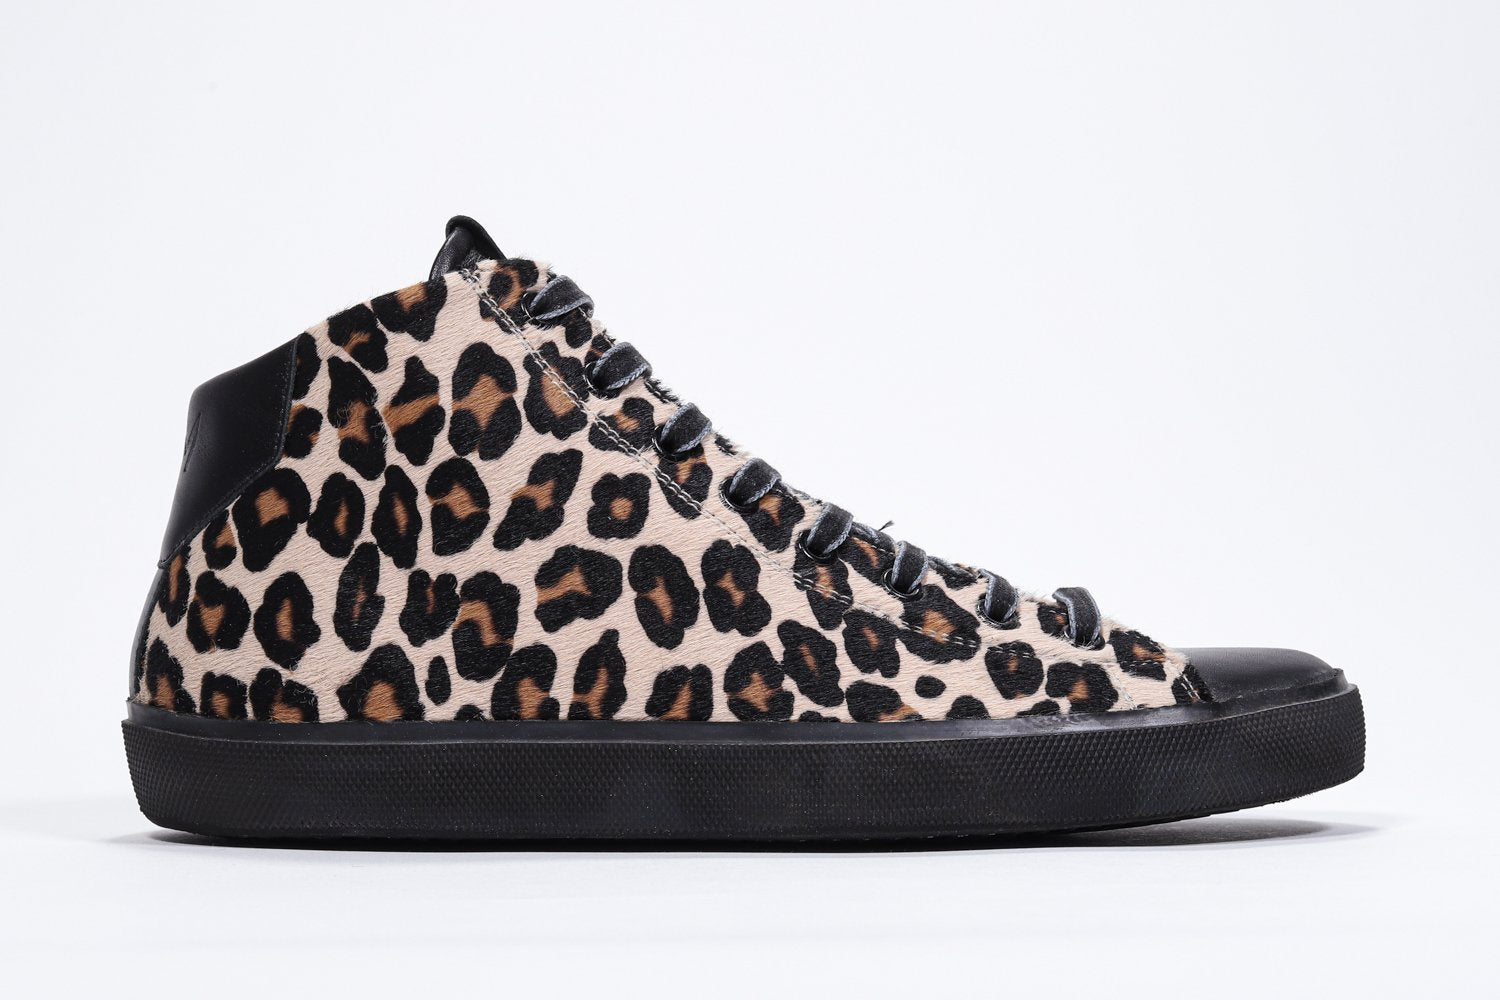 Profilo laterale del mid top leopardato sneaker con tomaia in pelle di vitello a pelo pieno, zip interna e suola nera.